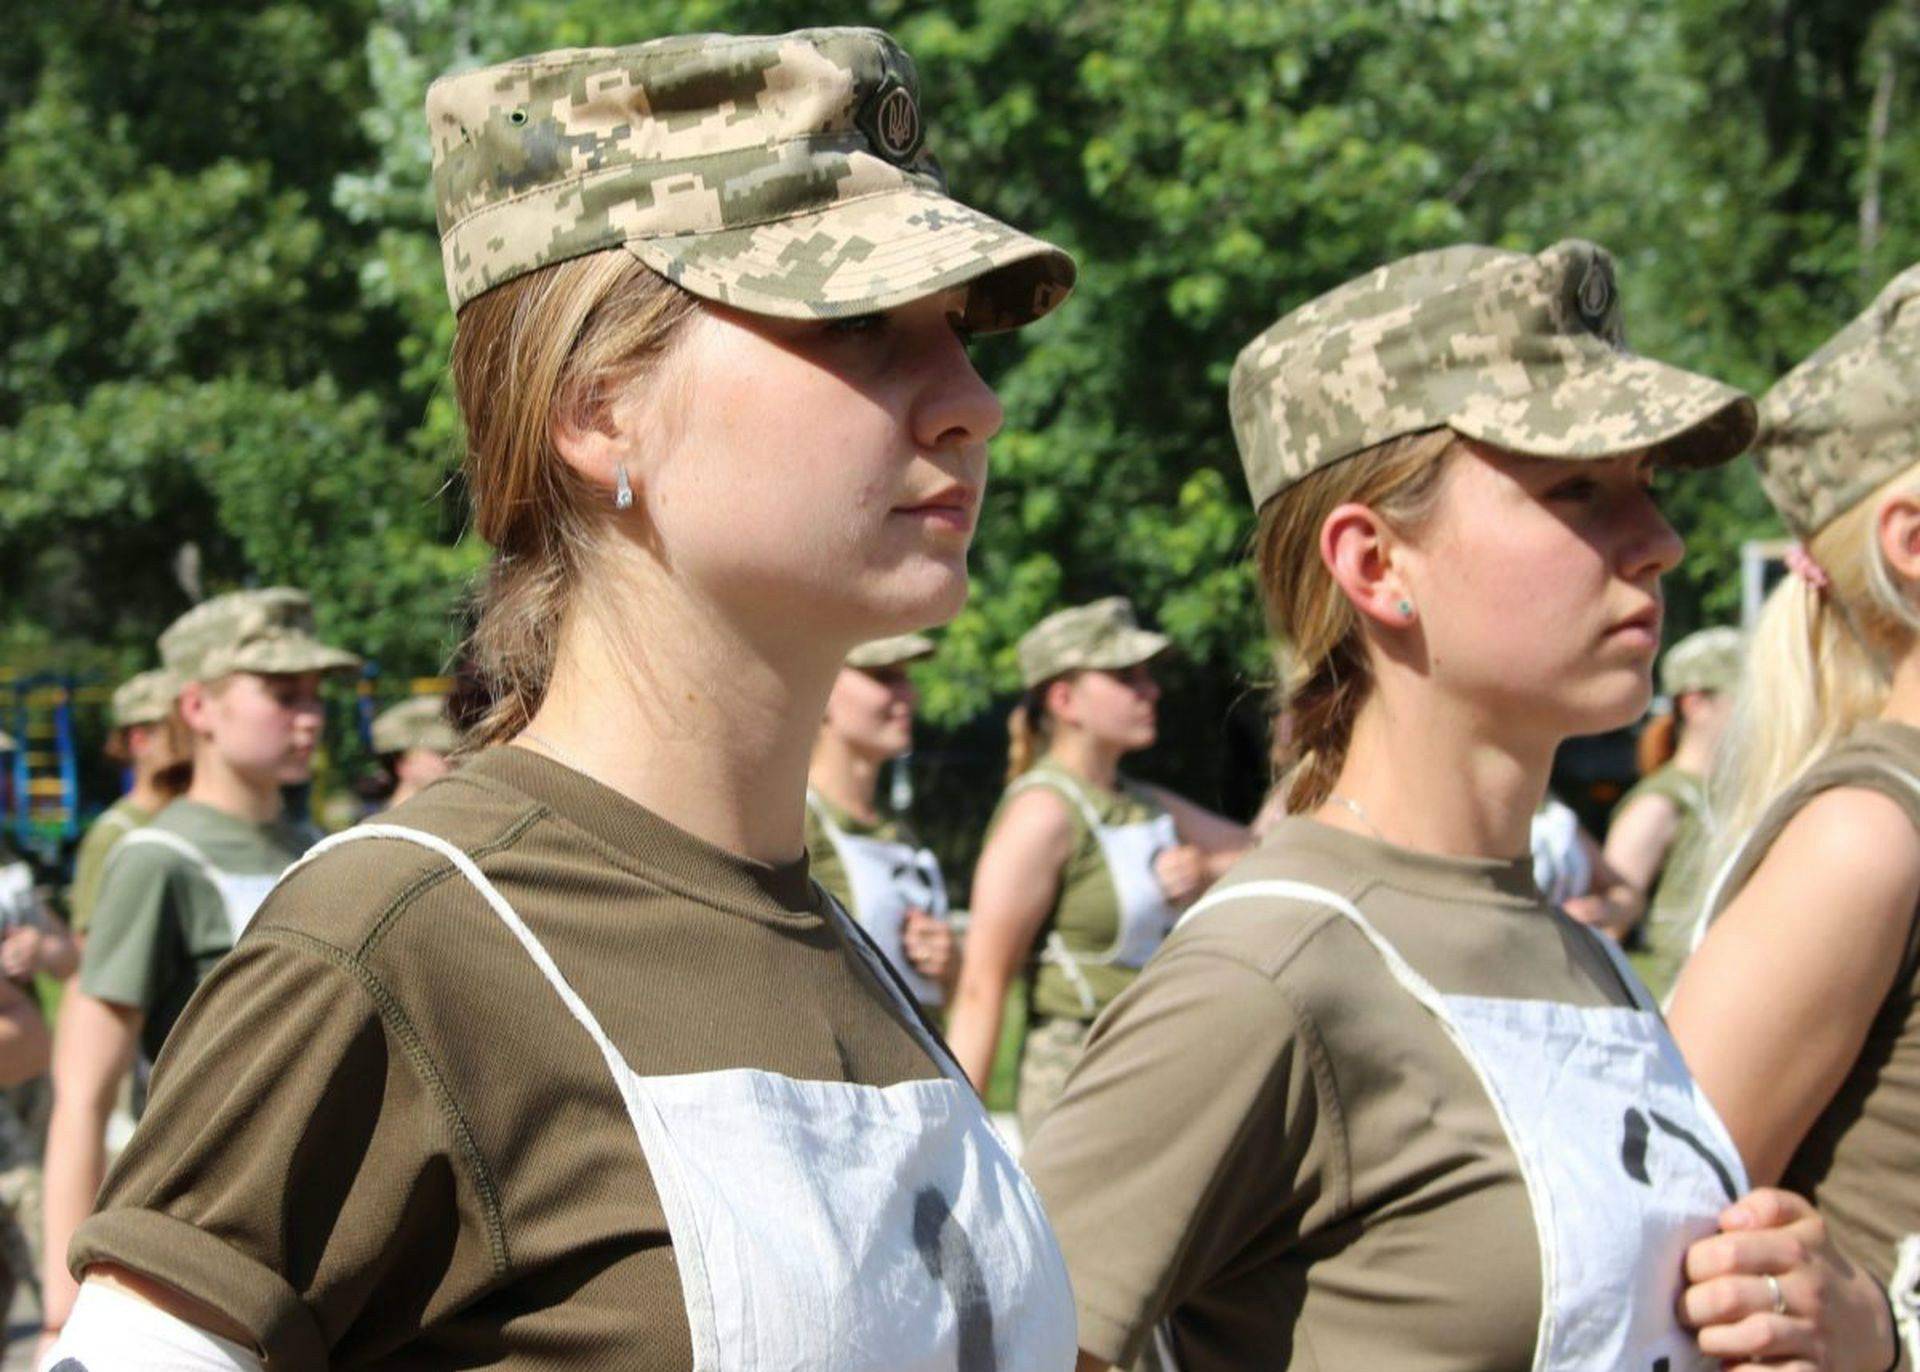 乌克兰上的女兵,大长腿,超高颜值,打99分,扣一分怕她们骄傲.